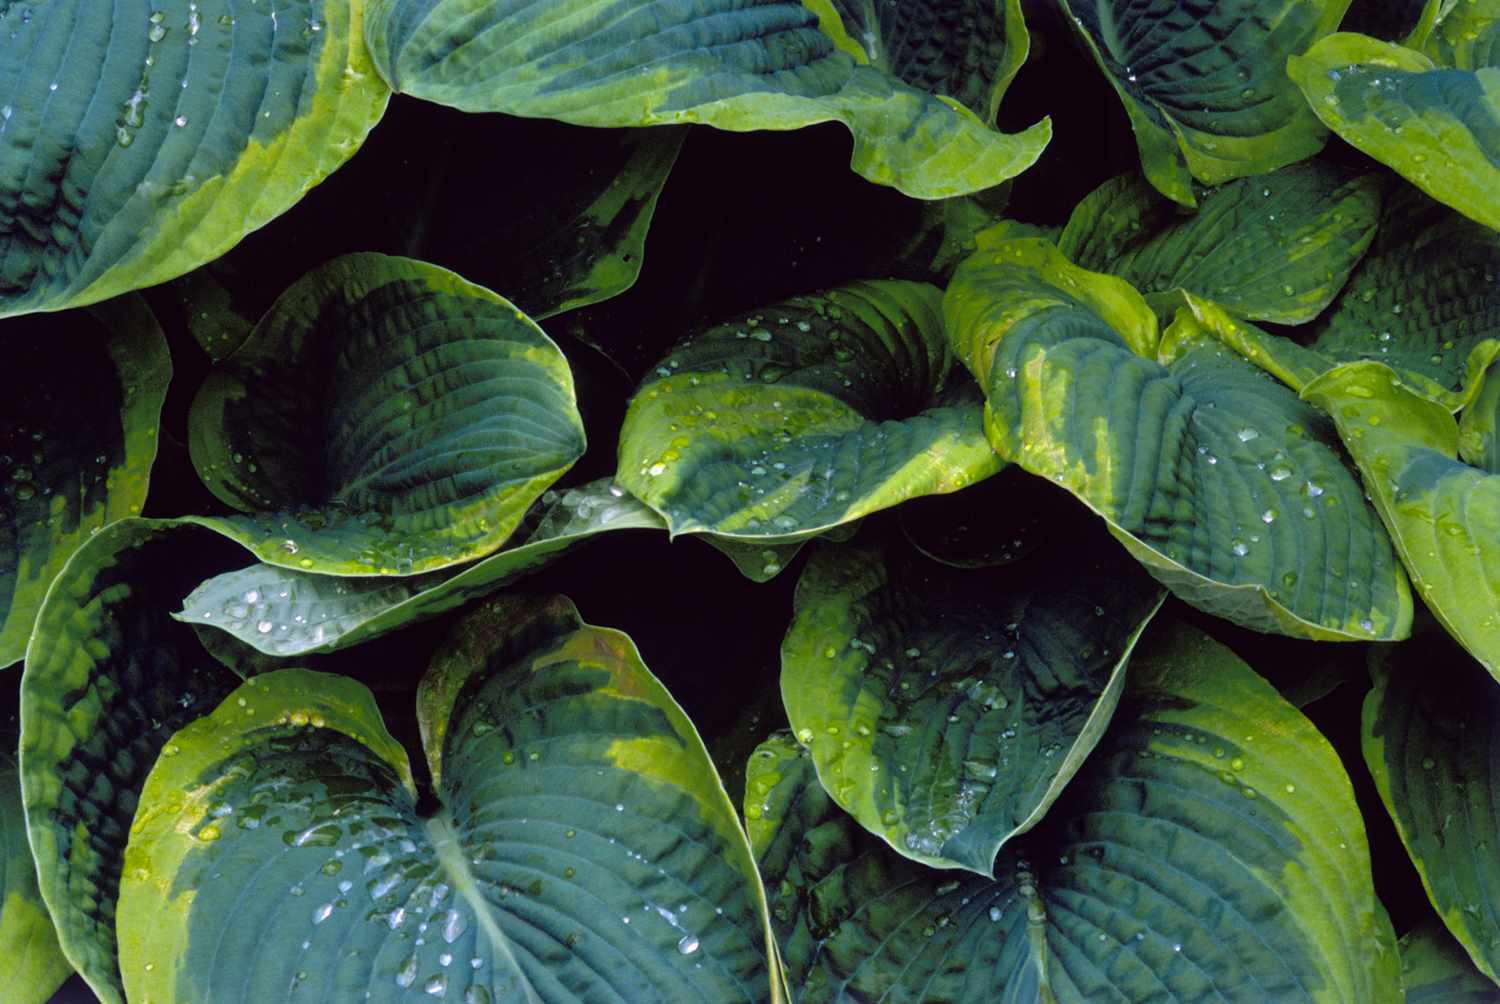 'Frances Williams' hosta mit blaugrünen Blättern mit grünlich-gelben Rändern